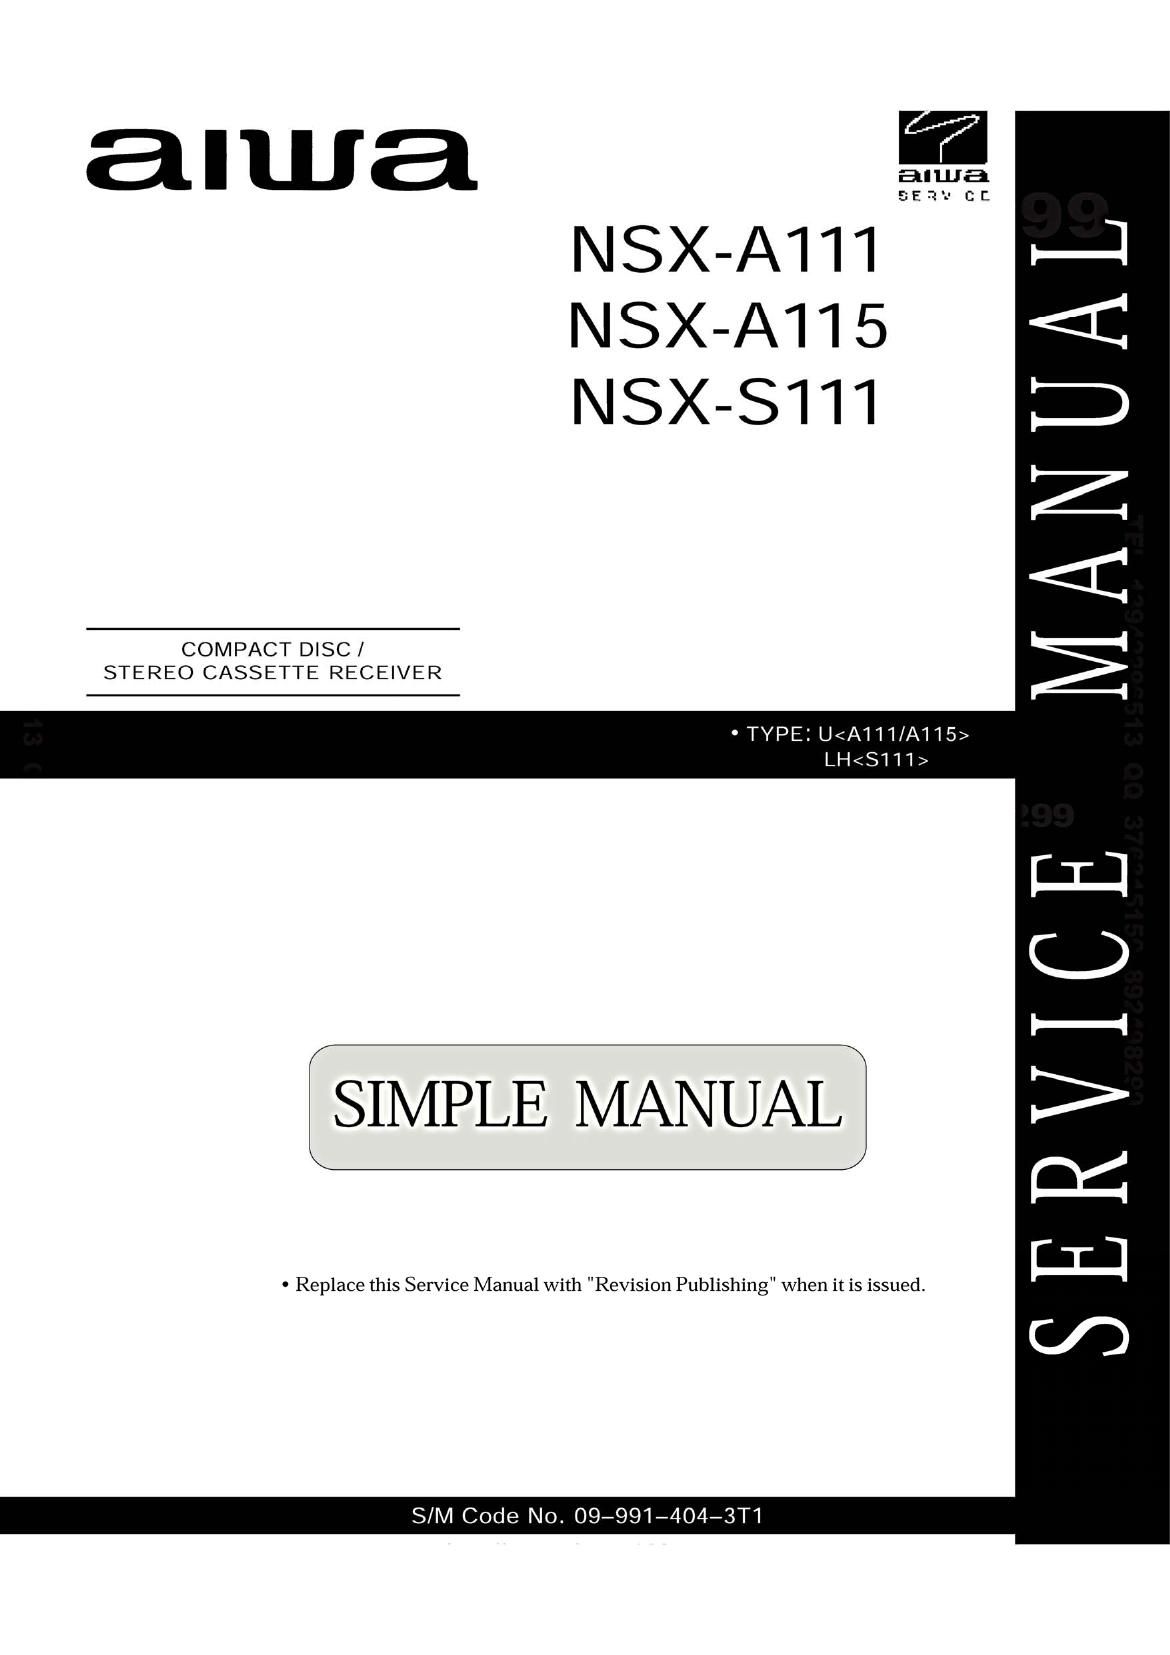 Aiwa NS XS111 Service Manual